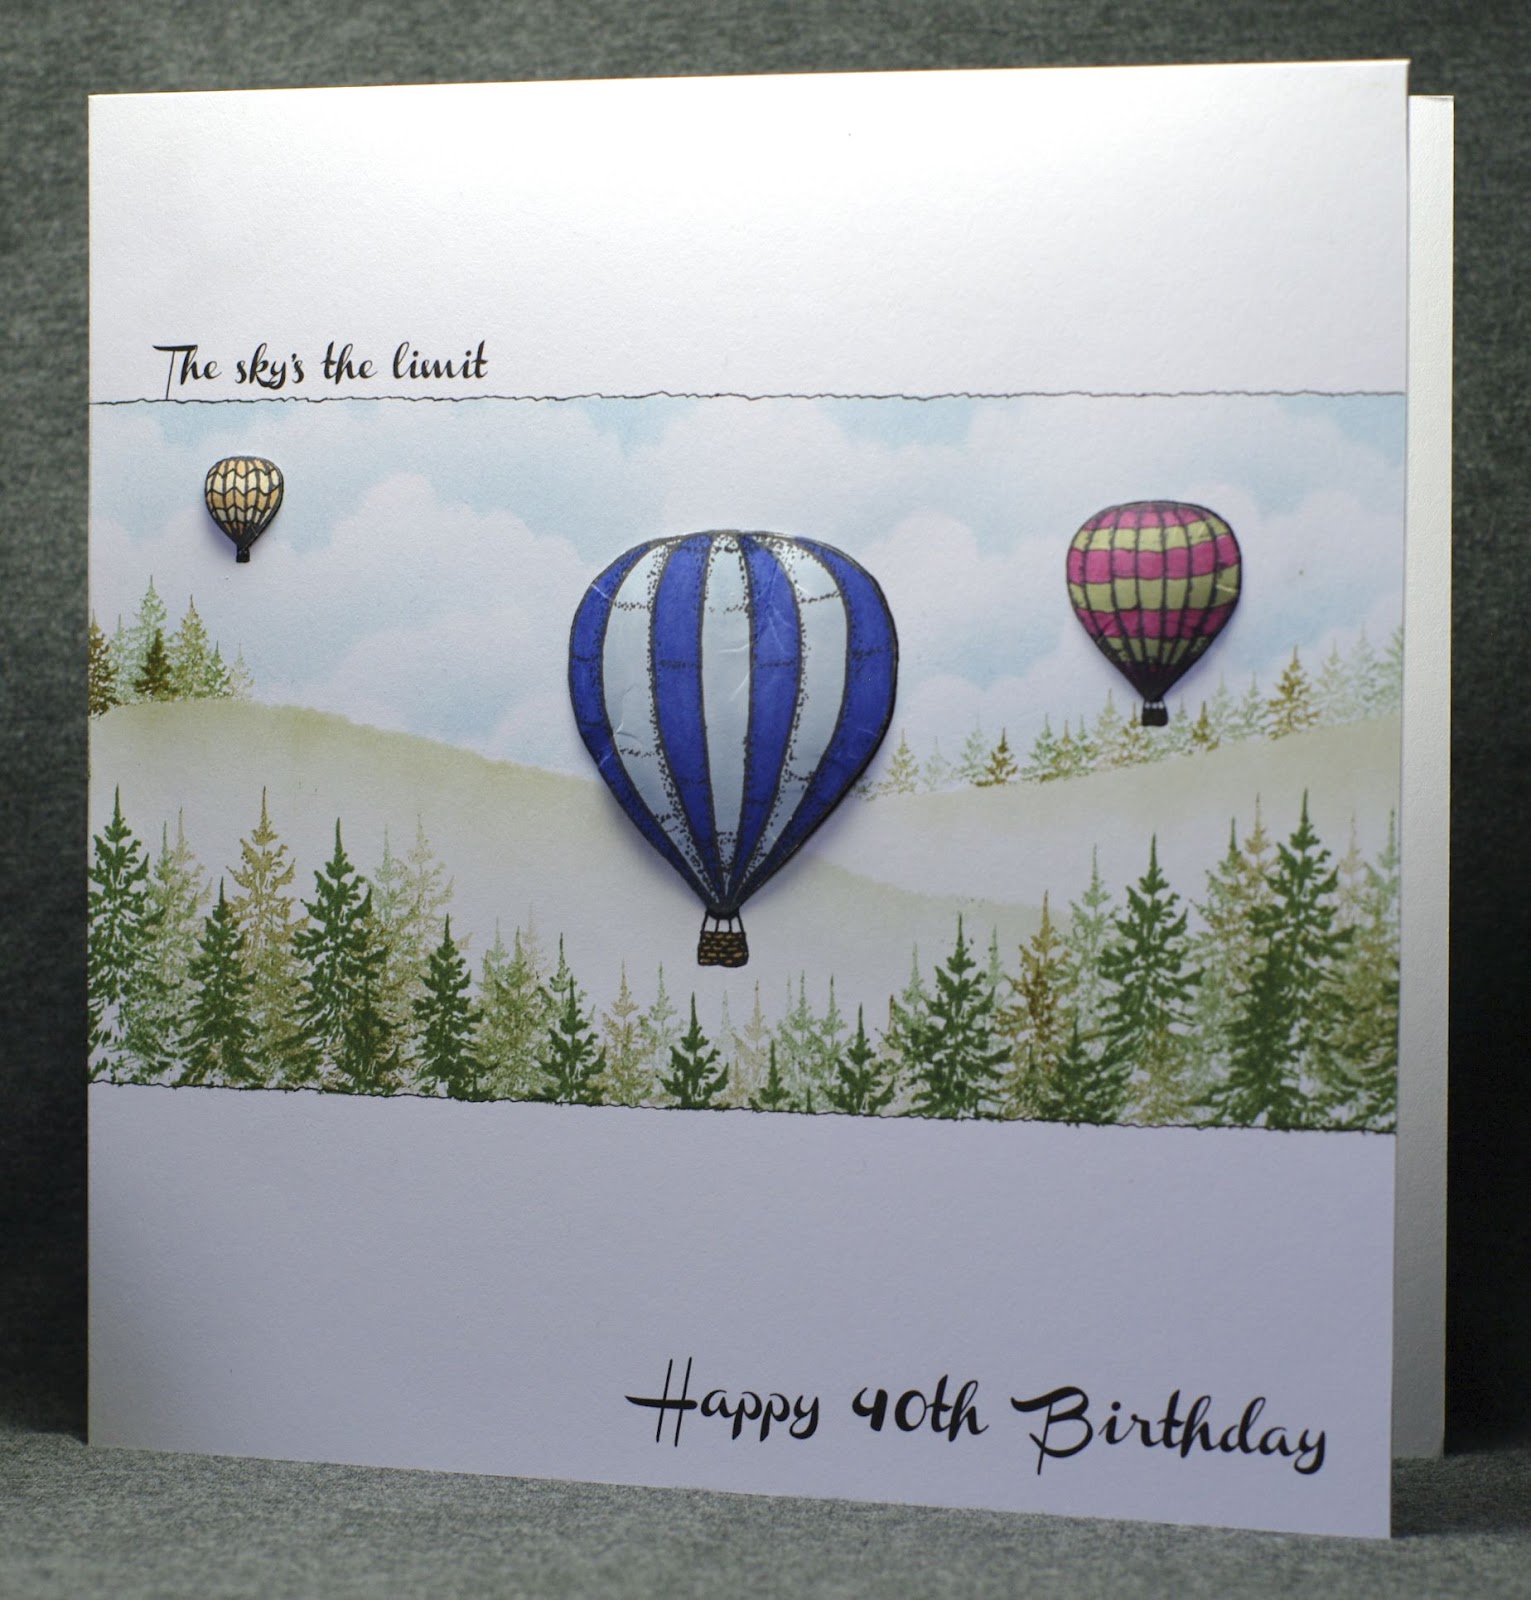 Lynne's Crafty Little Blog: 40th Birthday Card - Male